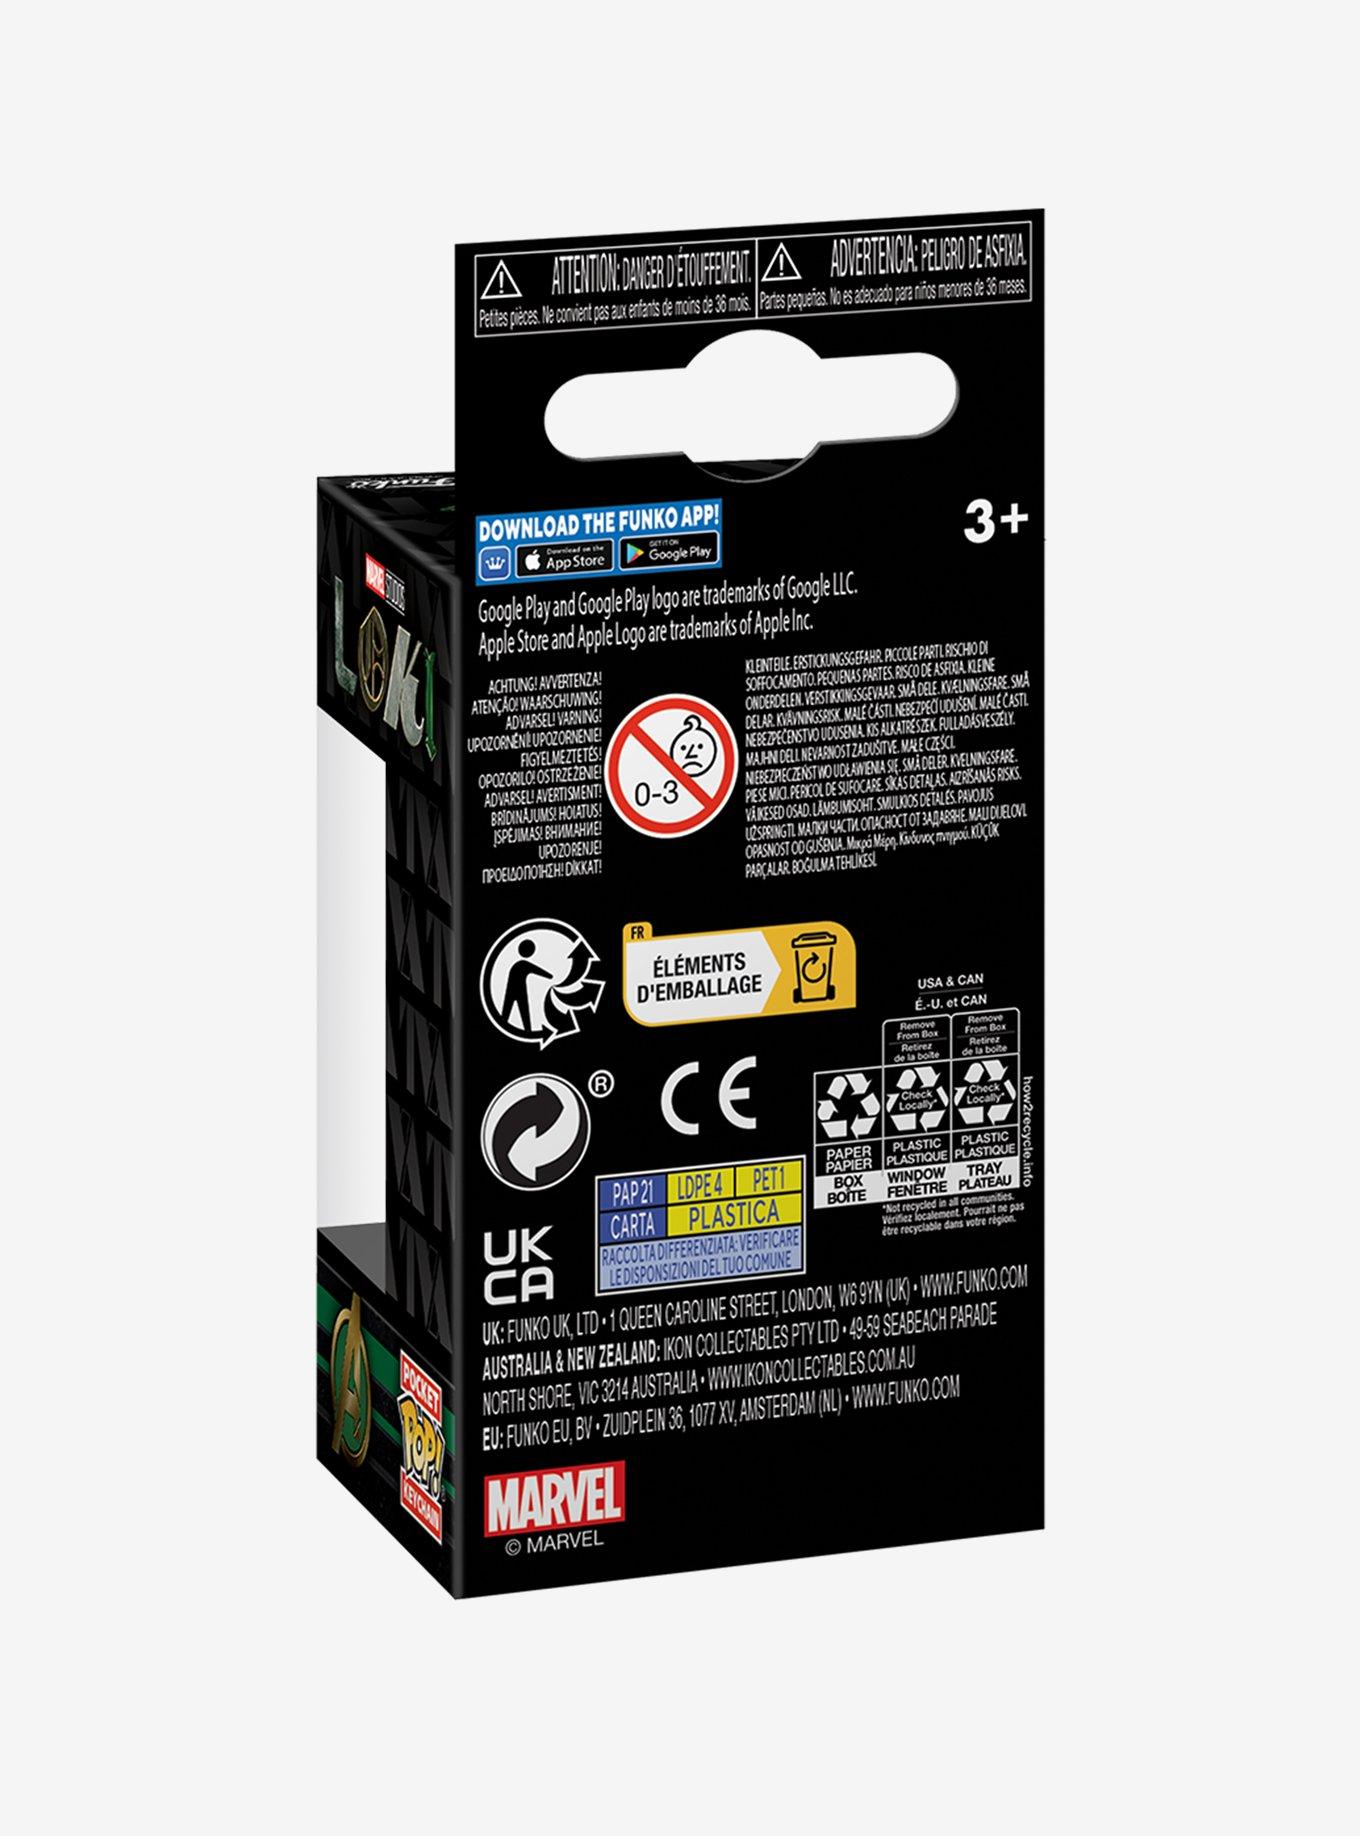 Funko Pocket Pop! Marvel Loki Alligator Loki Vinyl Keychain - BoxLunch Exclusive, , alternate